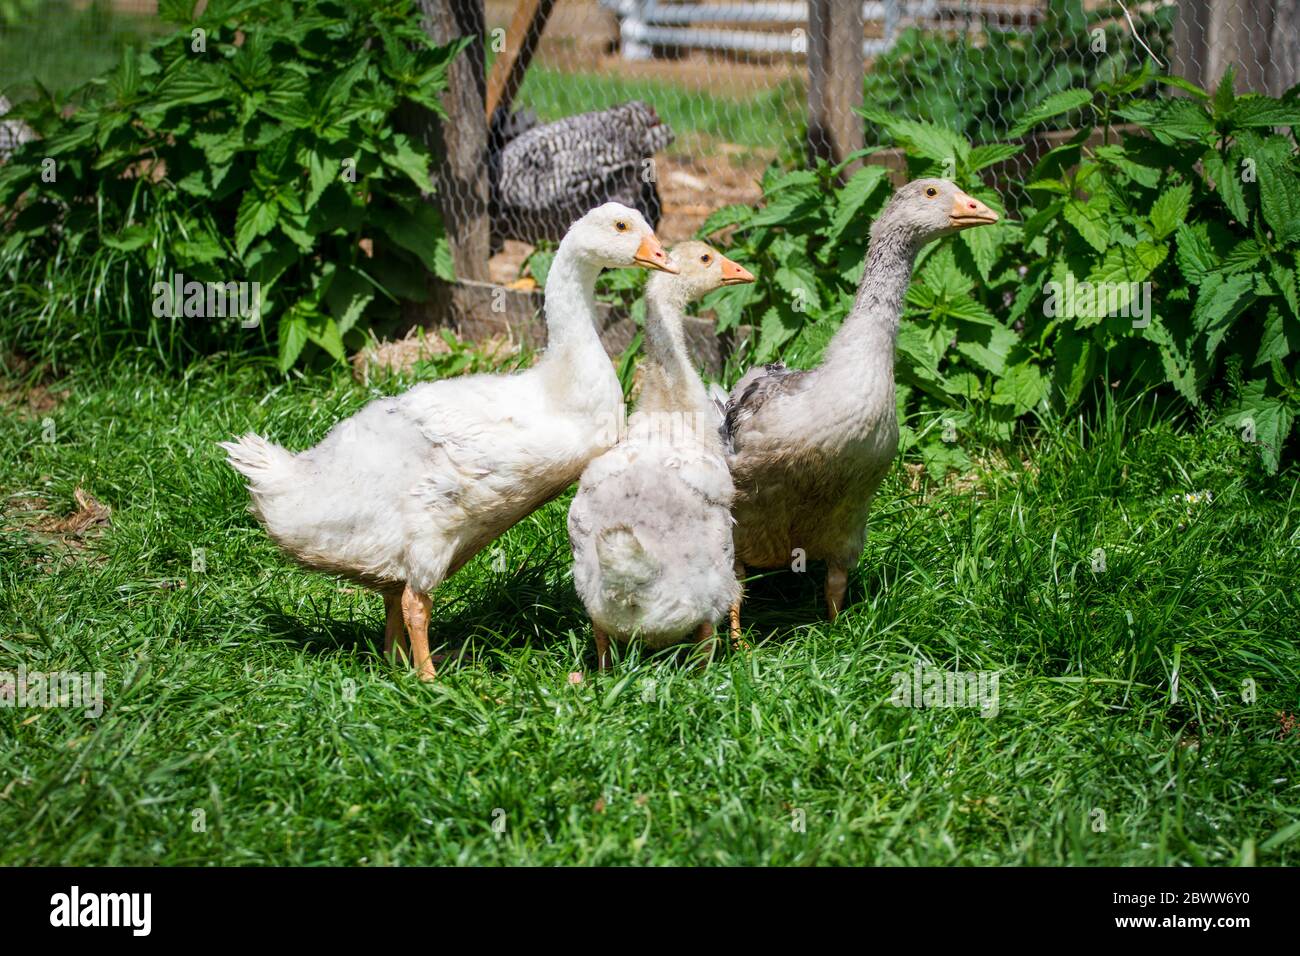 Un groupe de 3 Gosslings de la race d'oie 'Österreichische Landgans', une race autrichienne d'oie en danger critique d'extinction Banque D'Images